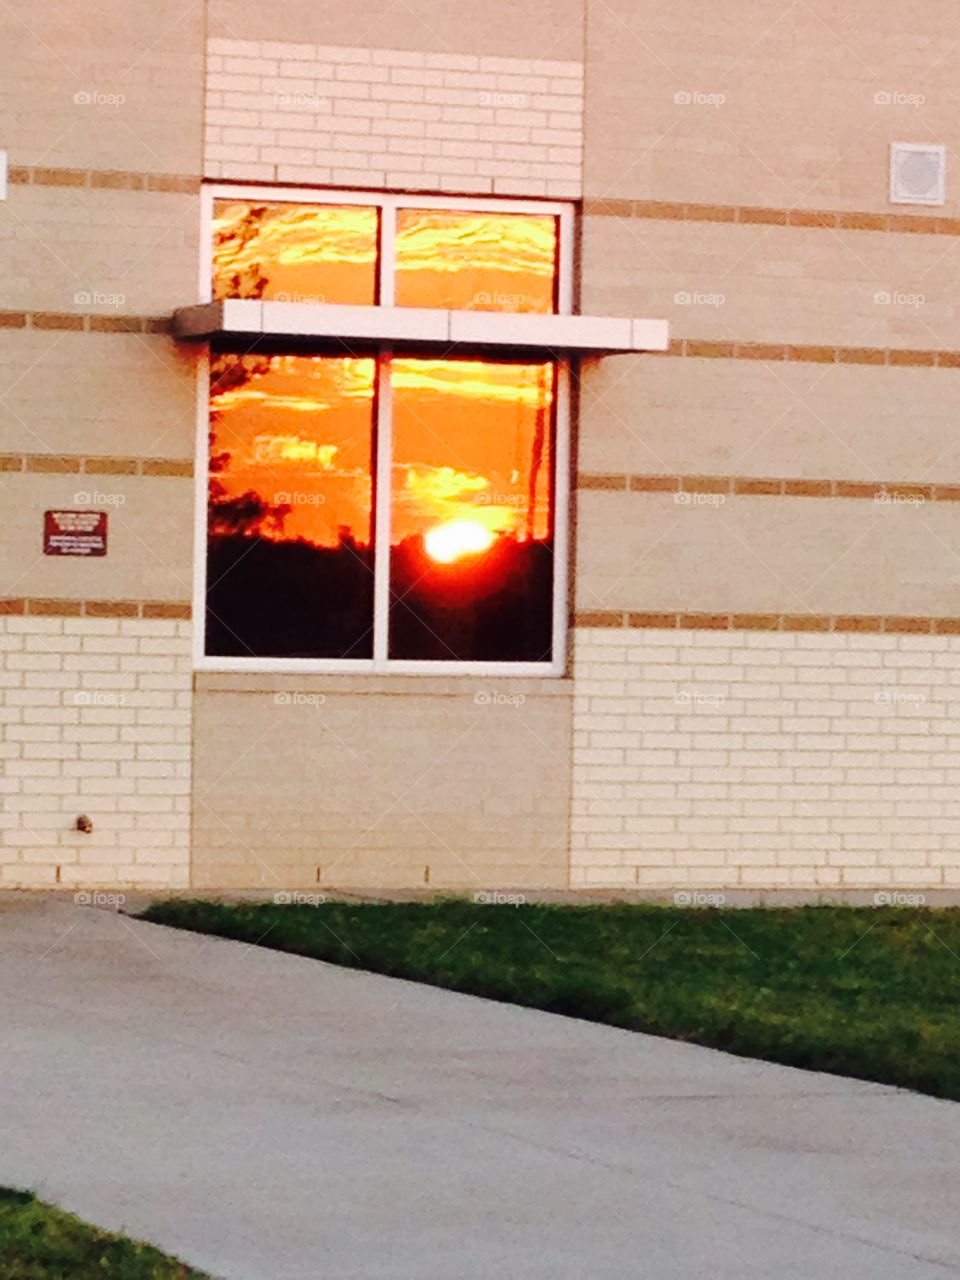 Sunrise reflection